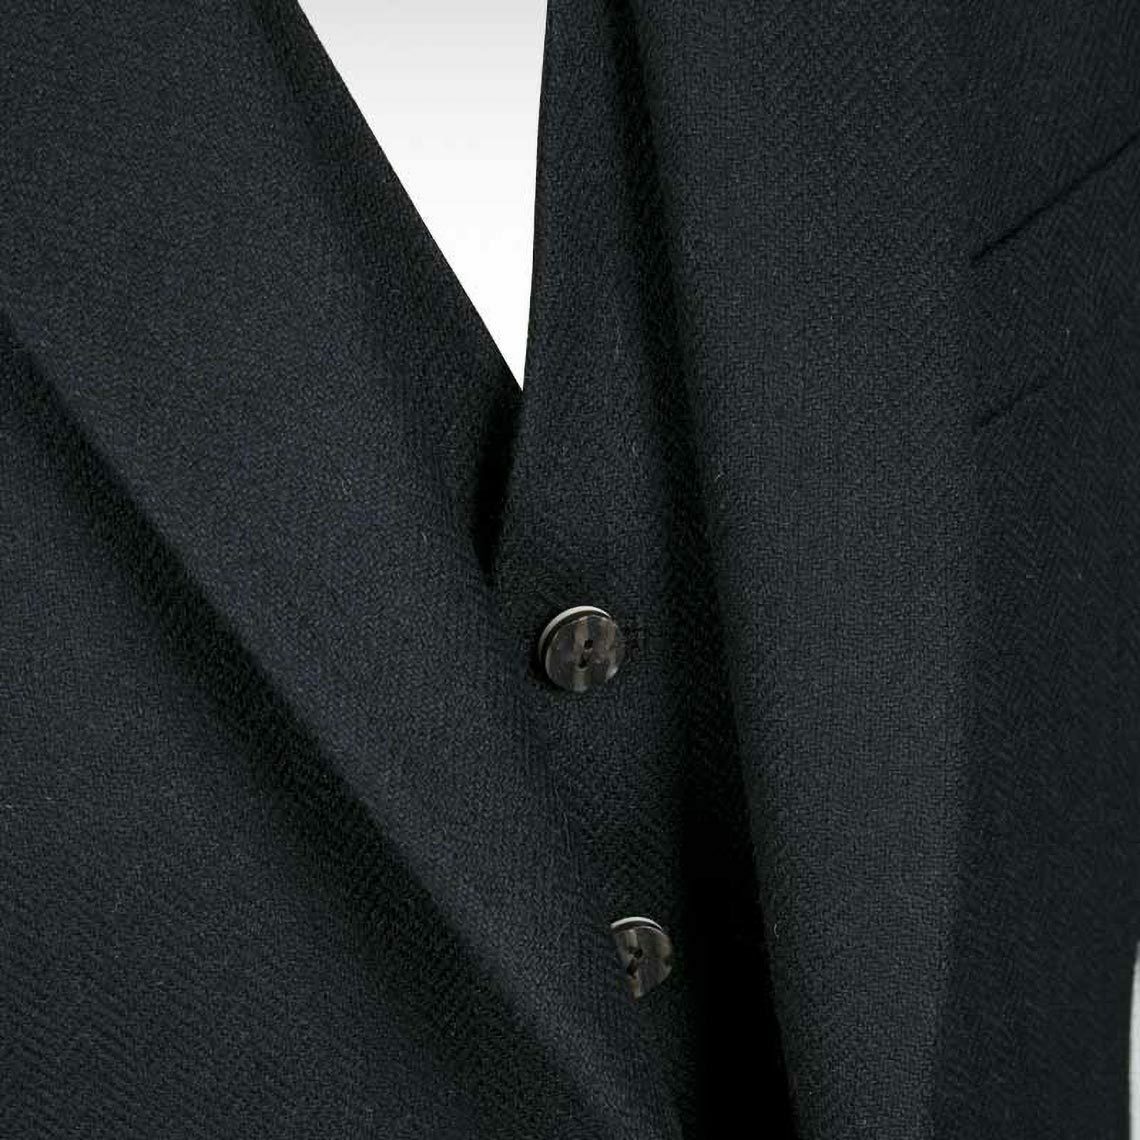 Black Herringbone Crail Jacket & Waistcoat